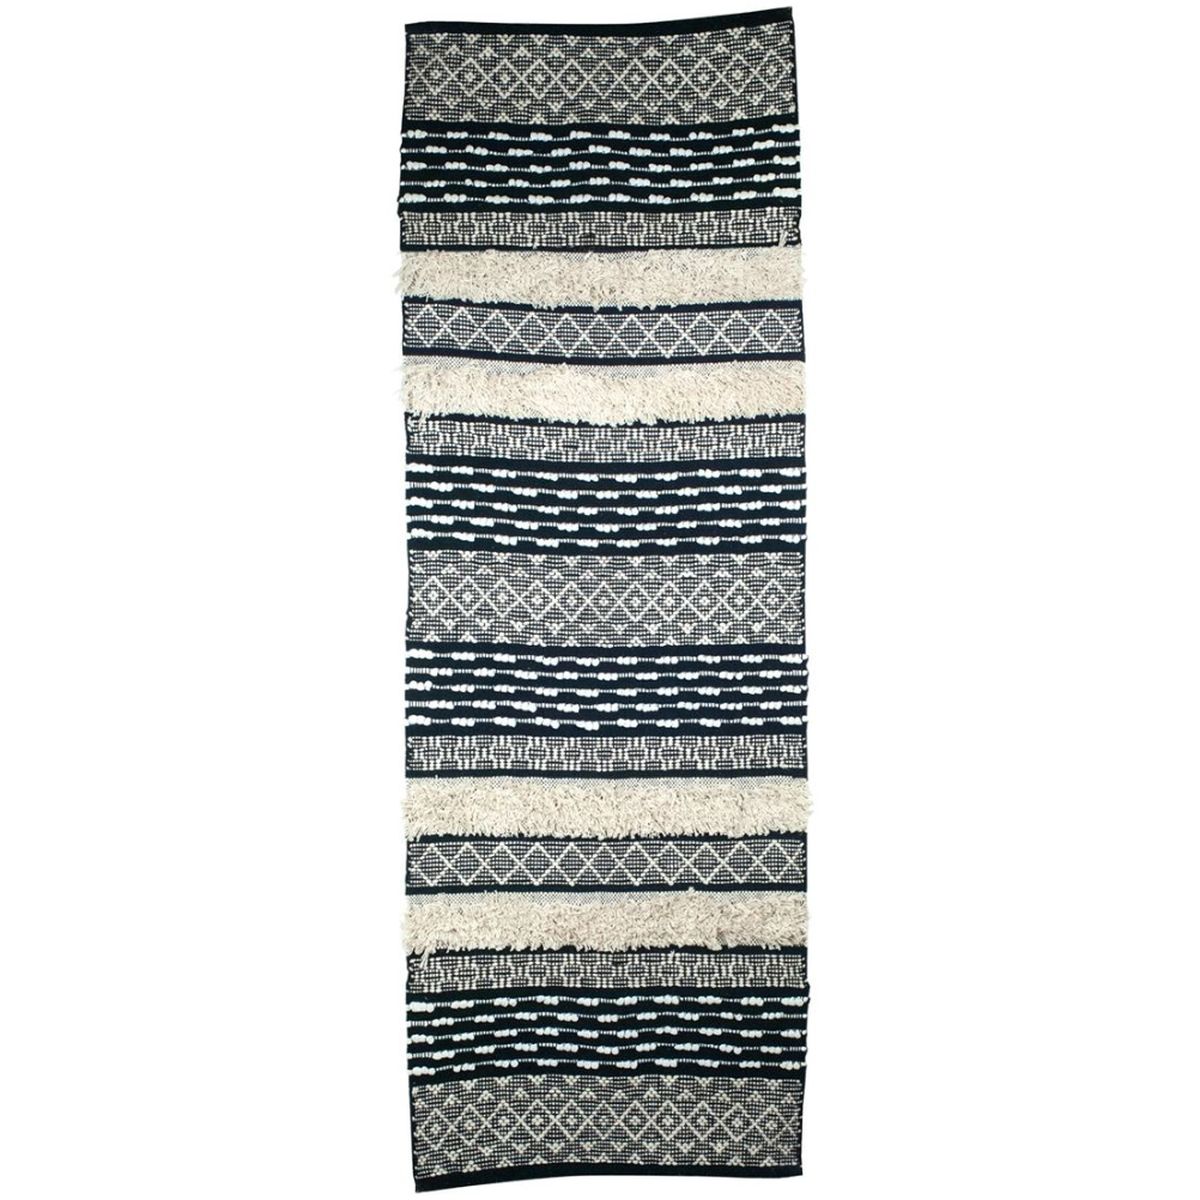 Tapis Ethnique tissage boho en coton 220 x 70 cm